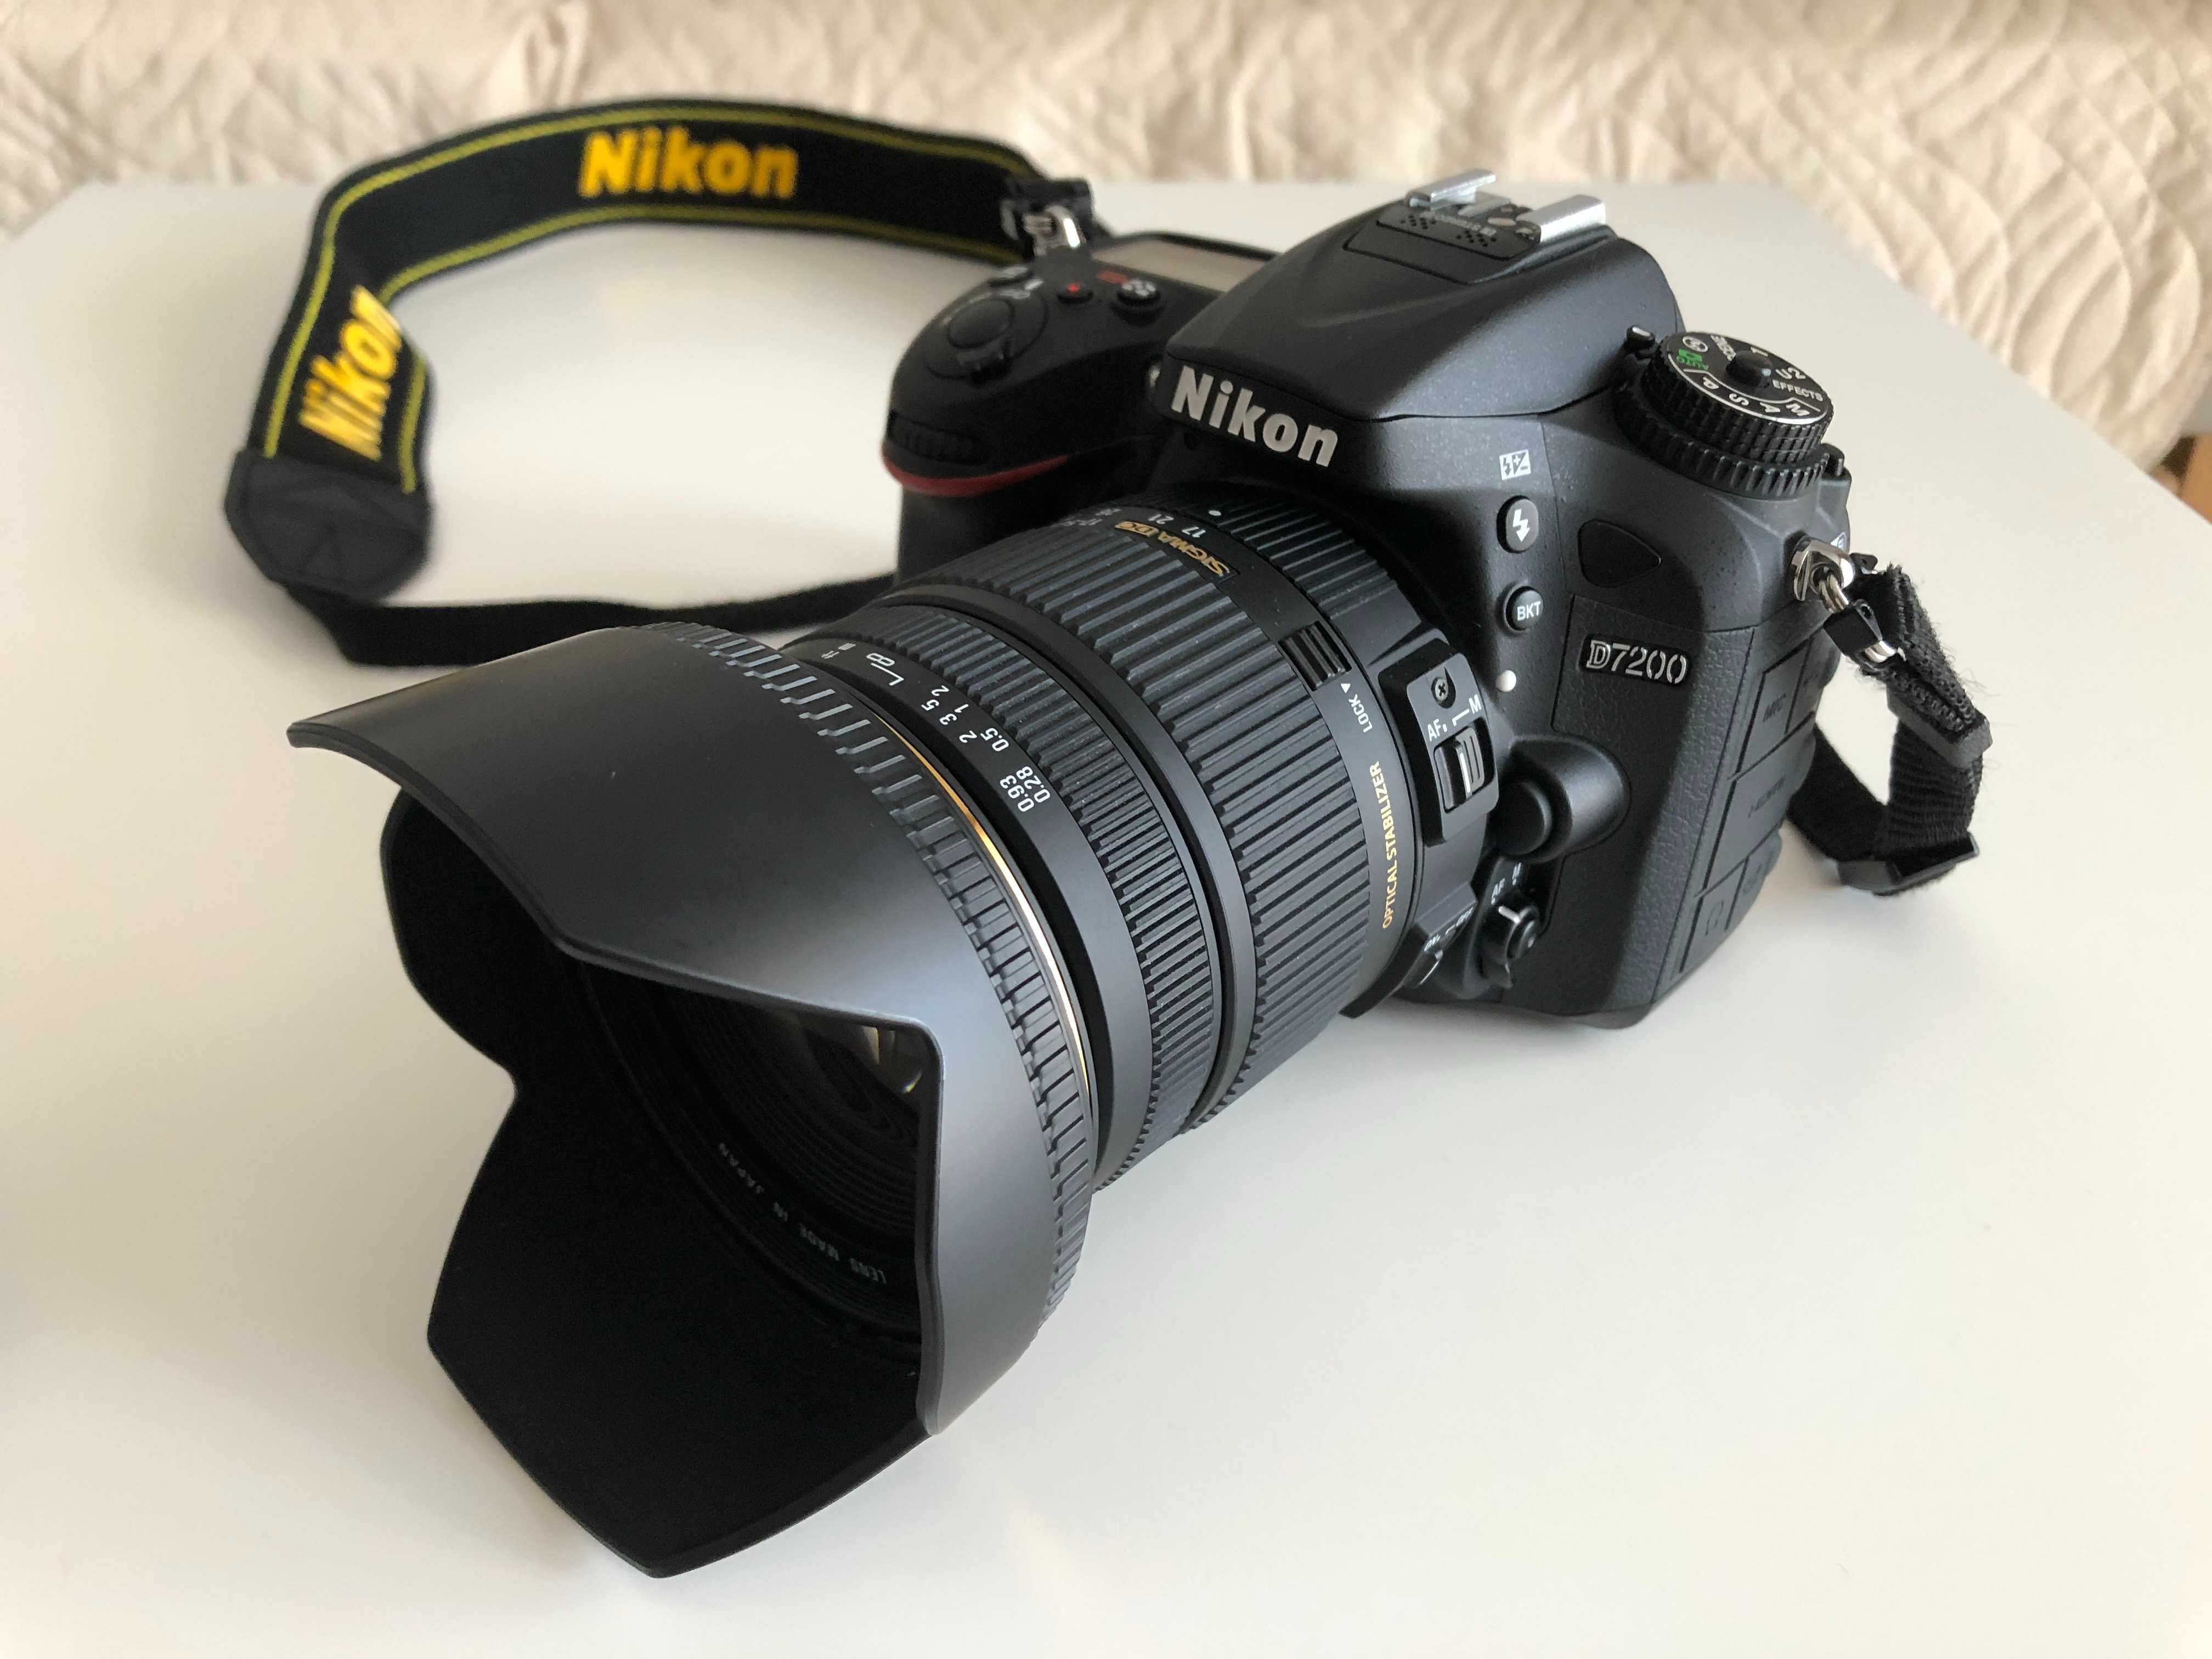 Nikon d7200 (4205 cadre) + Sigma 17-50mm (aprox 1500 cadre)